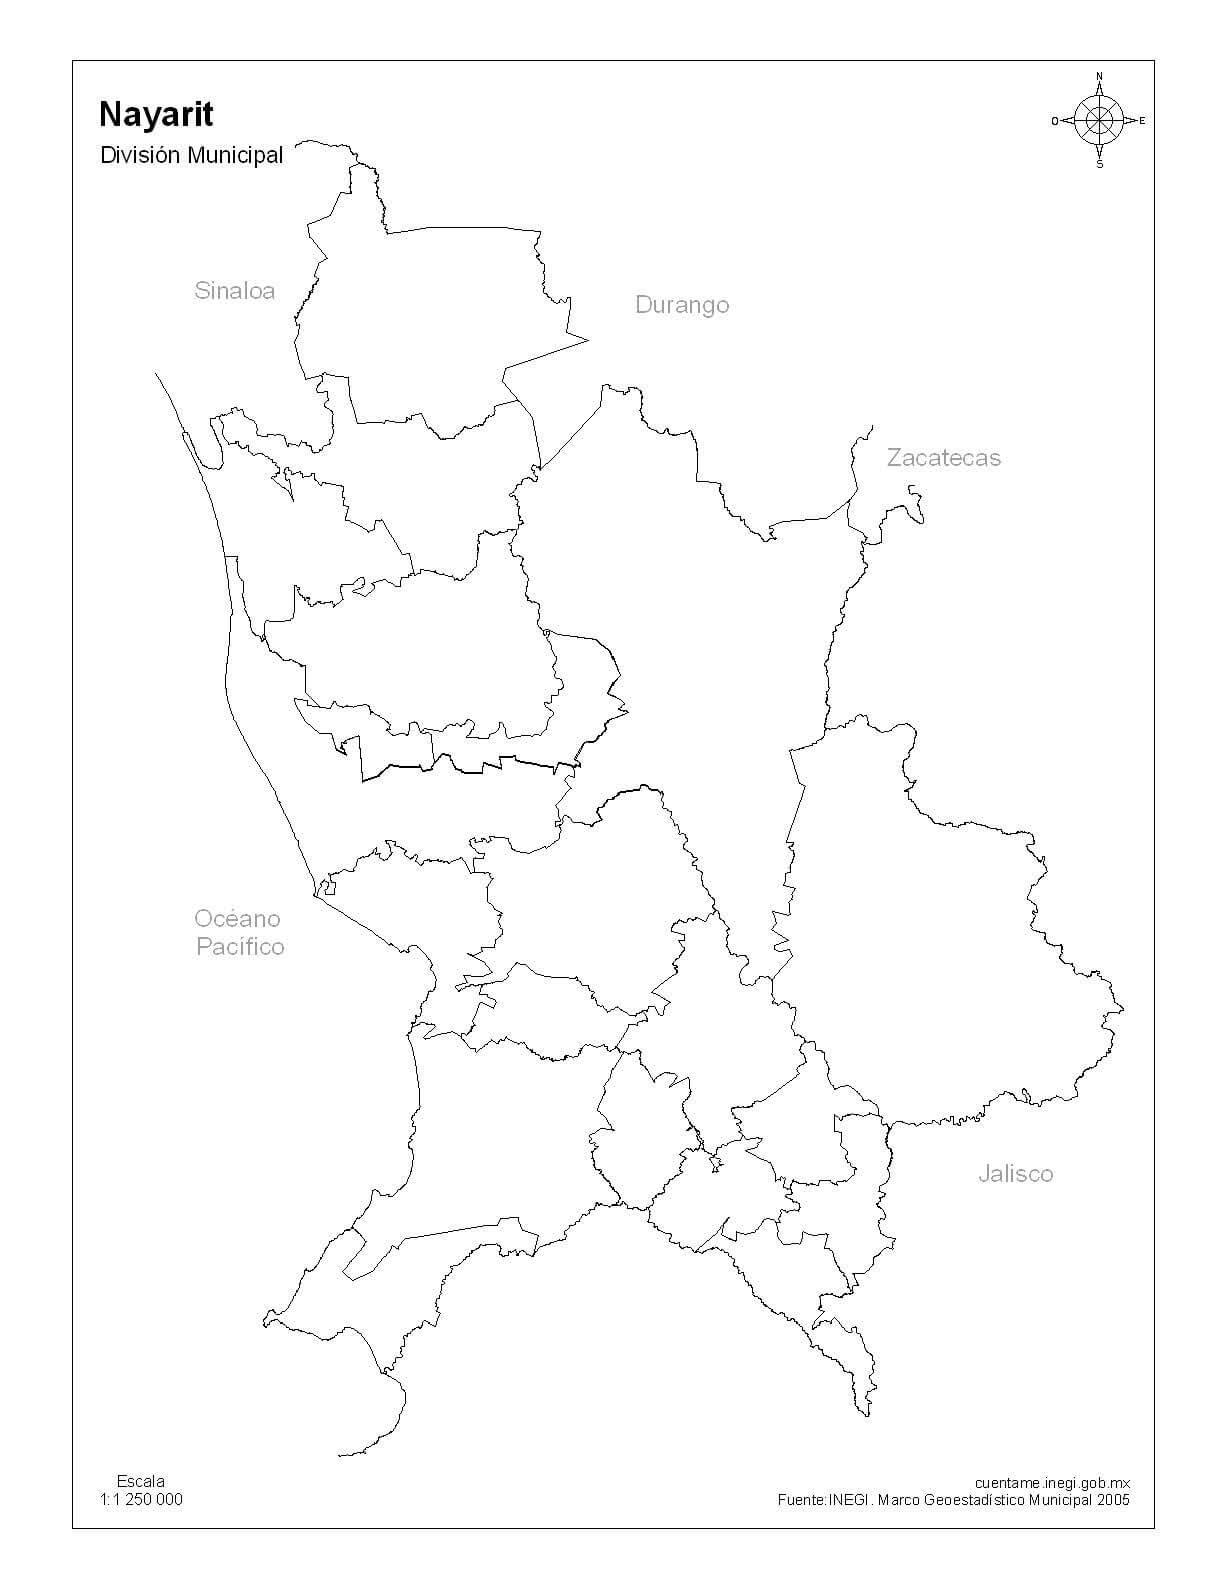 Mapa de Nayarit sin nombres